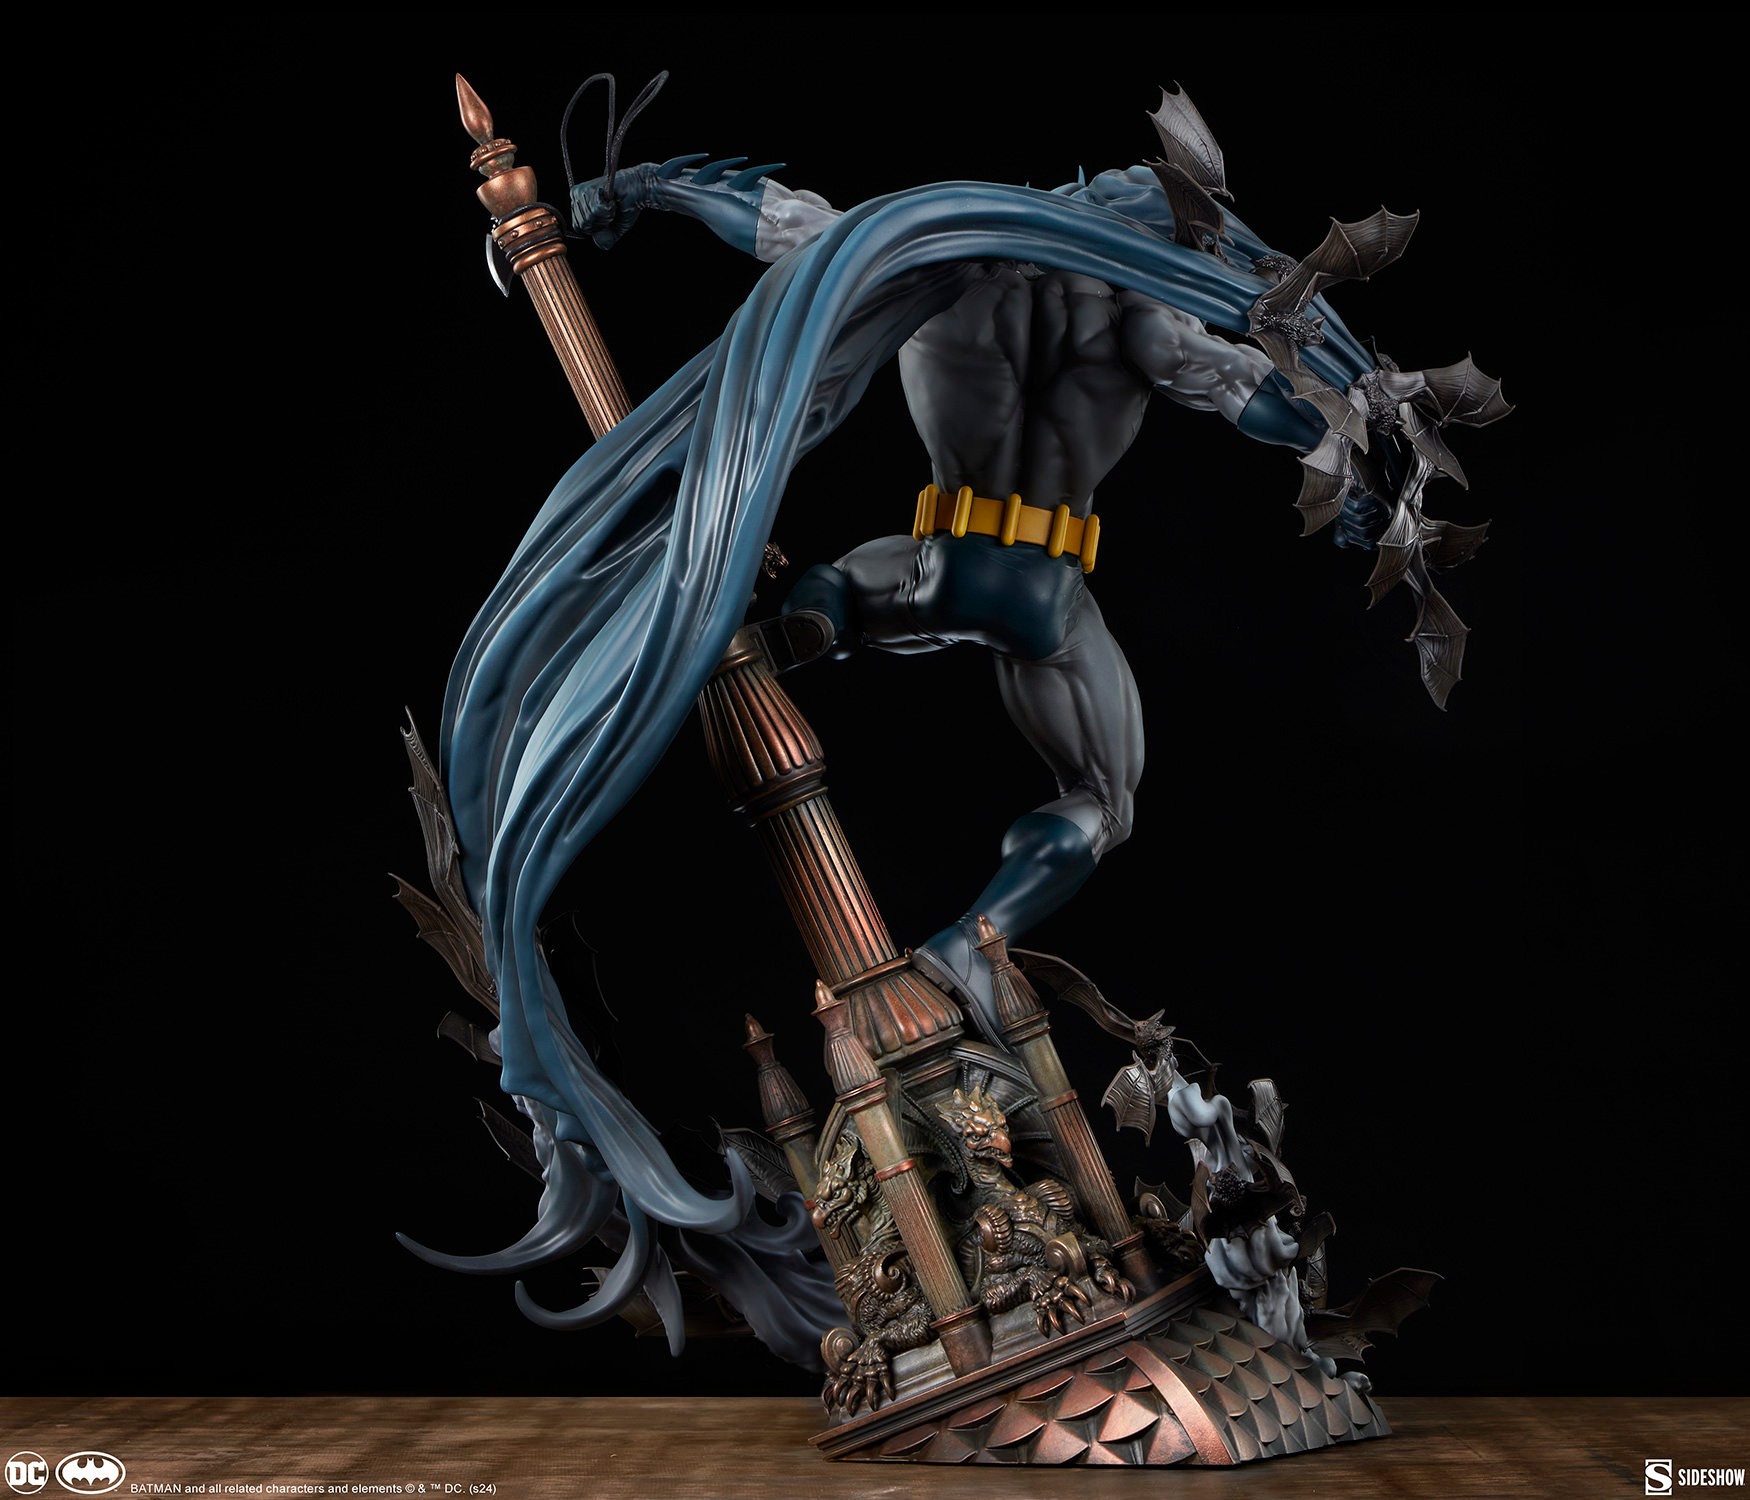 BATMAN PREMIUM FORMAT Batman-premium-format-figure_dc-comics_gallery_6605bc9c7d49f